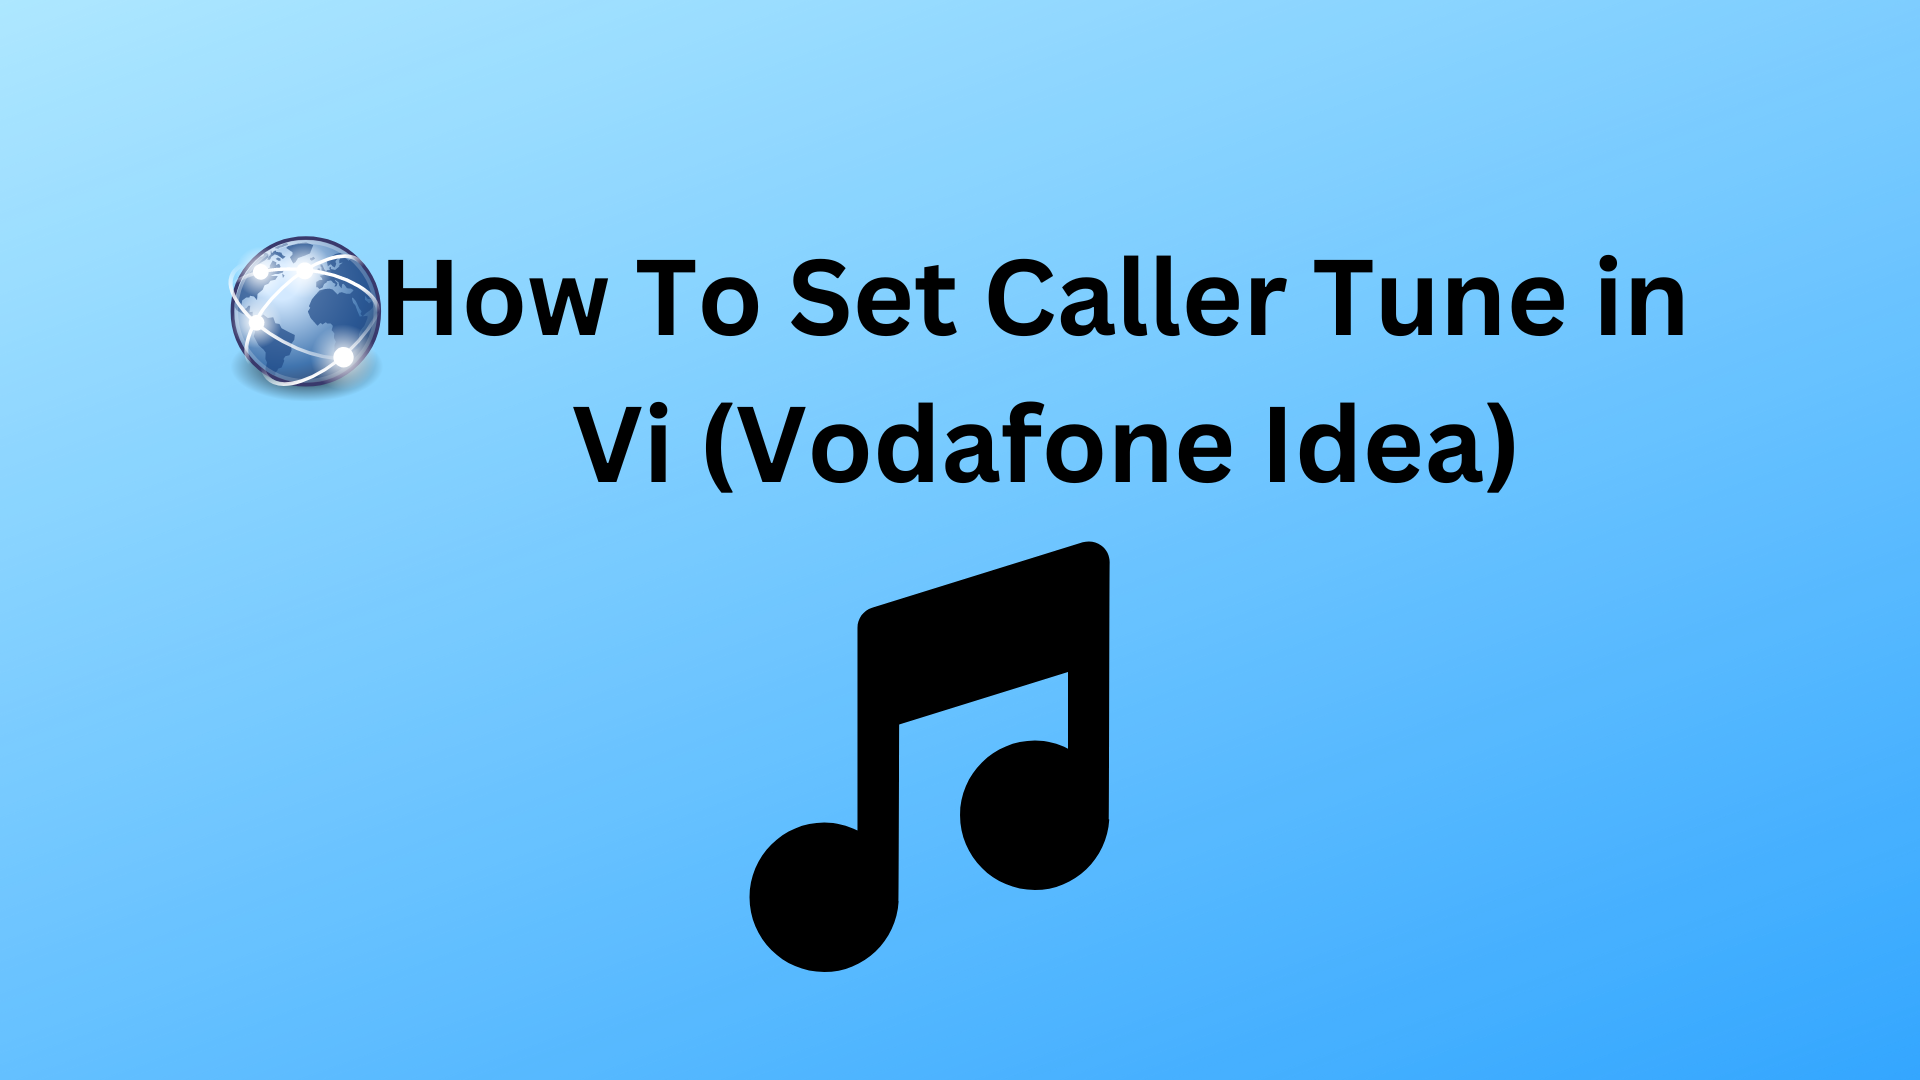 How To Set Caller Tune in Vi (Vodafone Idea)